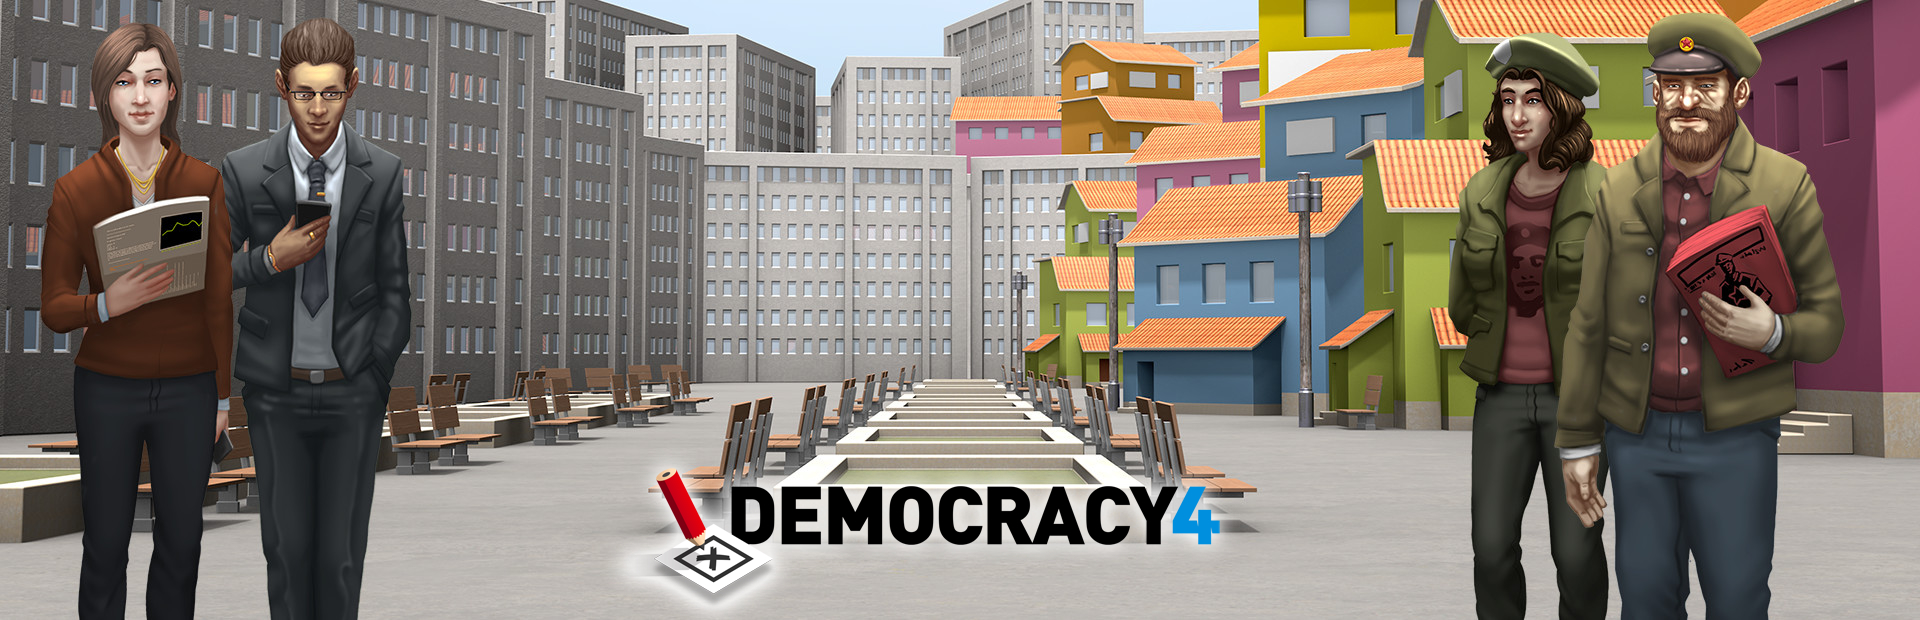 دانلود بازی Democracy 4 برای کامپیوتر | گیمباتو